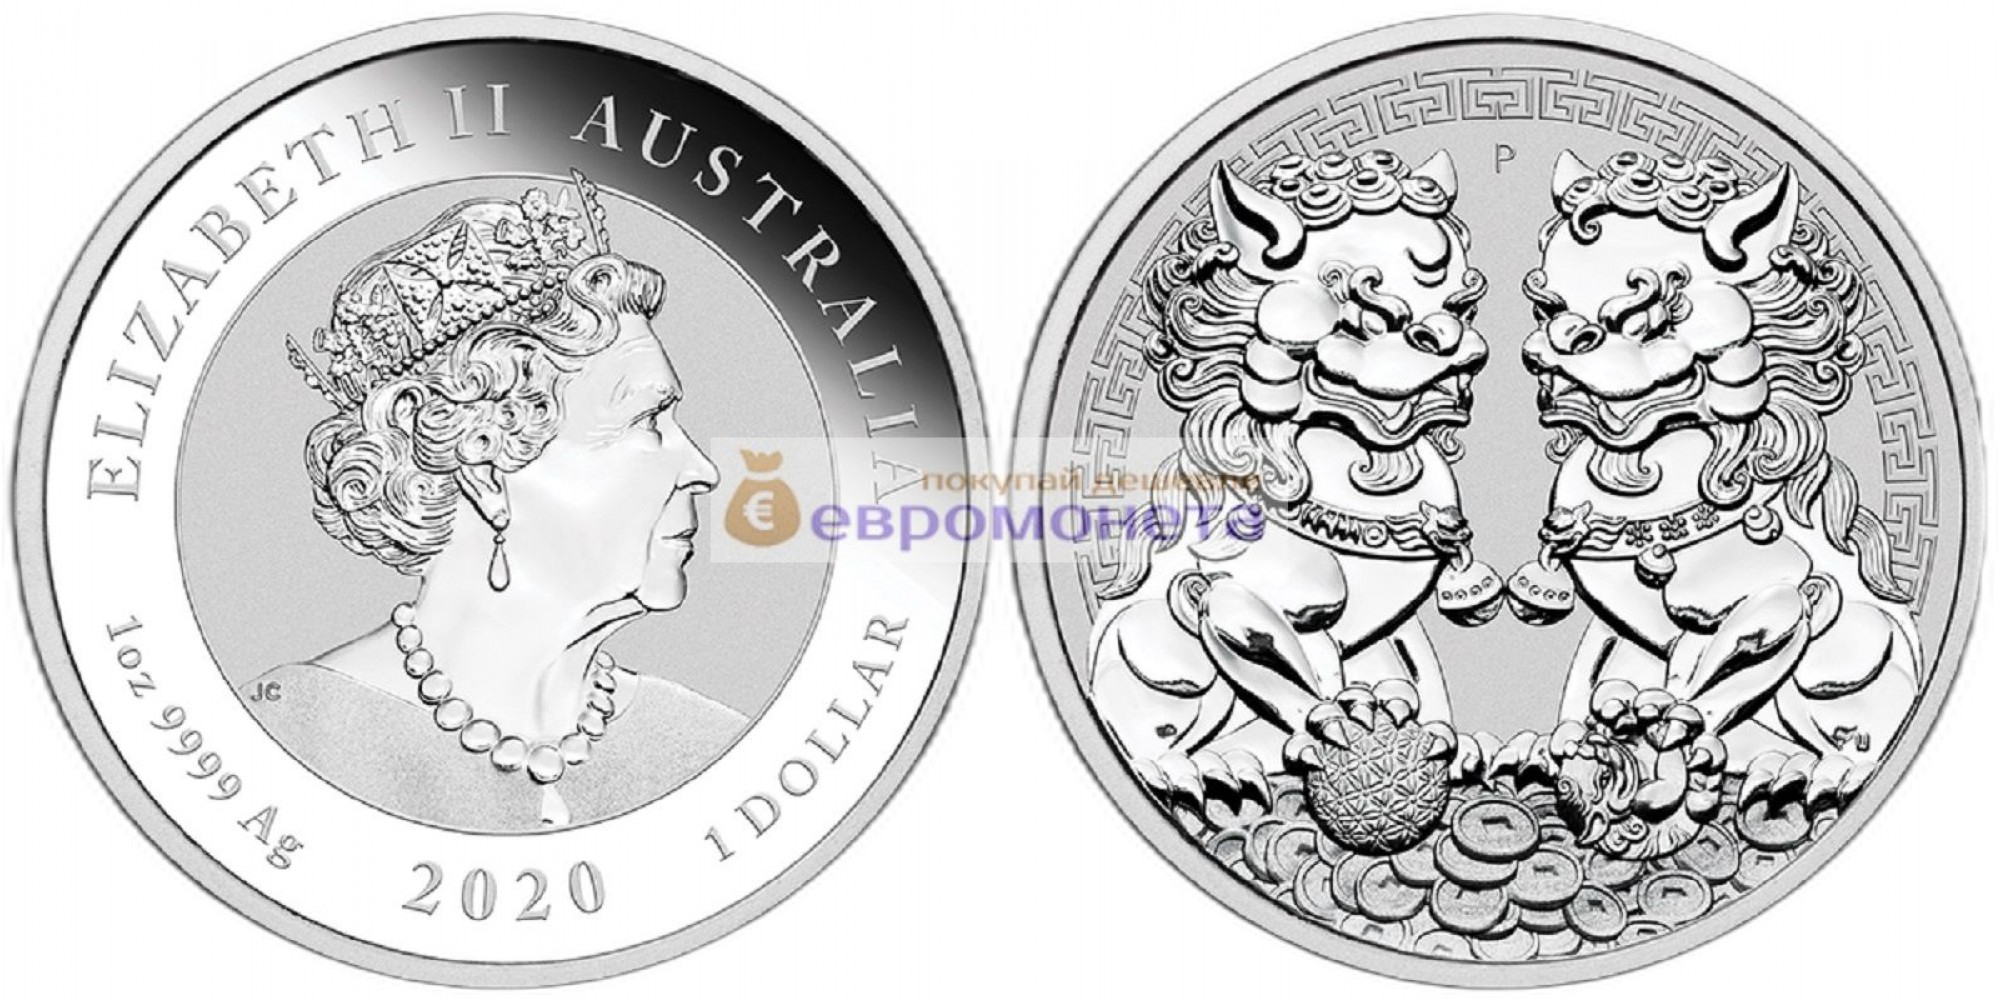 Австралия 1 доллар 2020 год Два китайских императорских льва-стража. Серебро унция 999 пробы